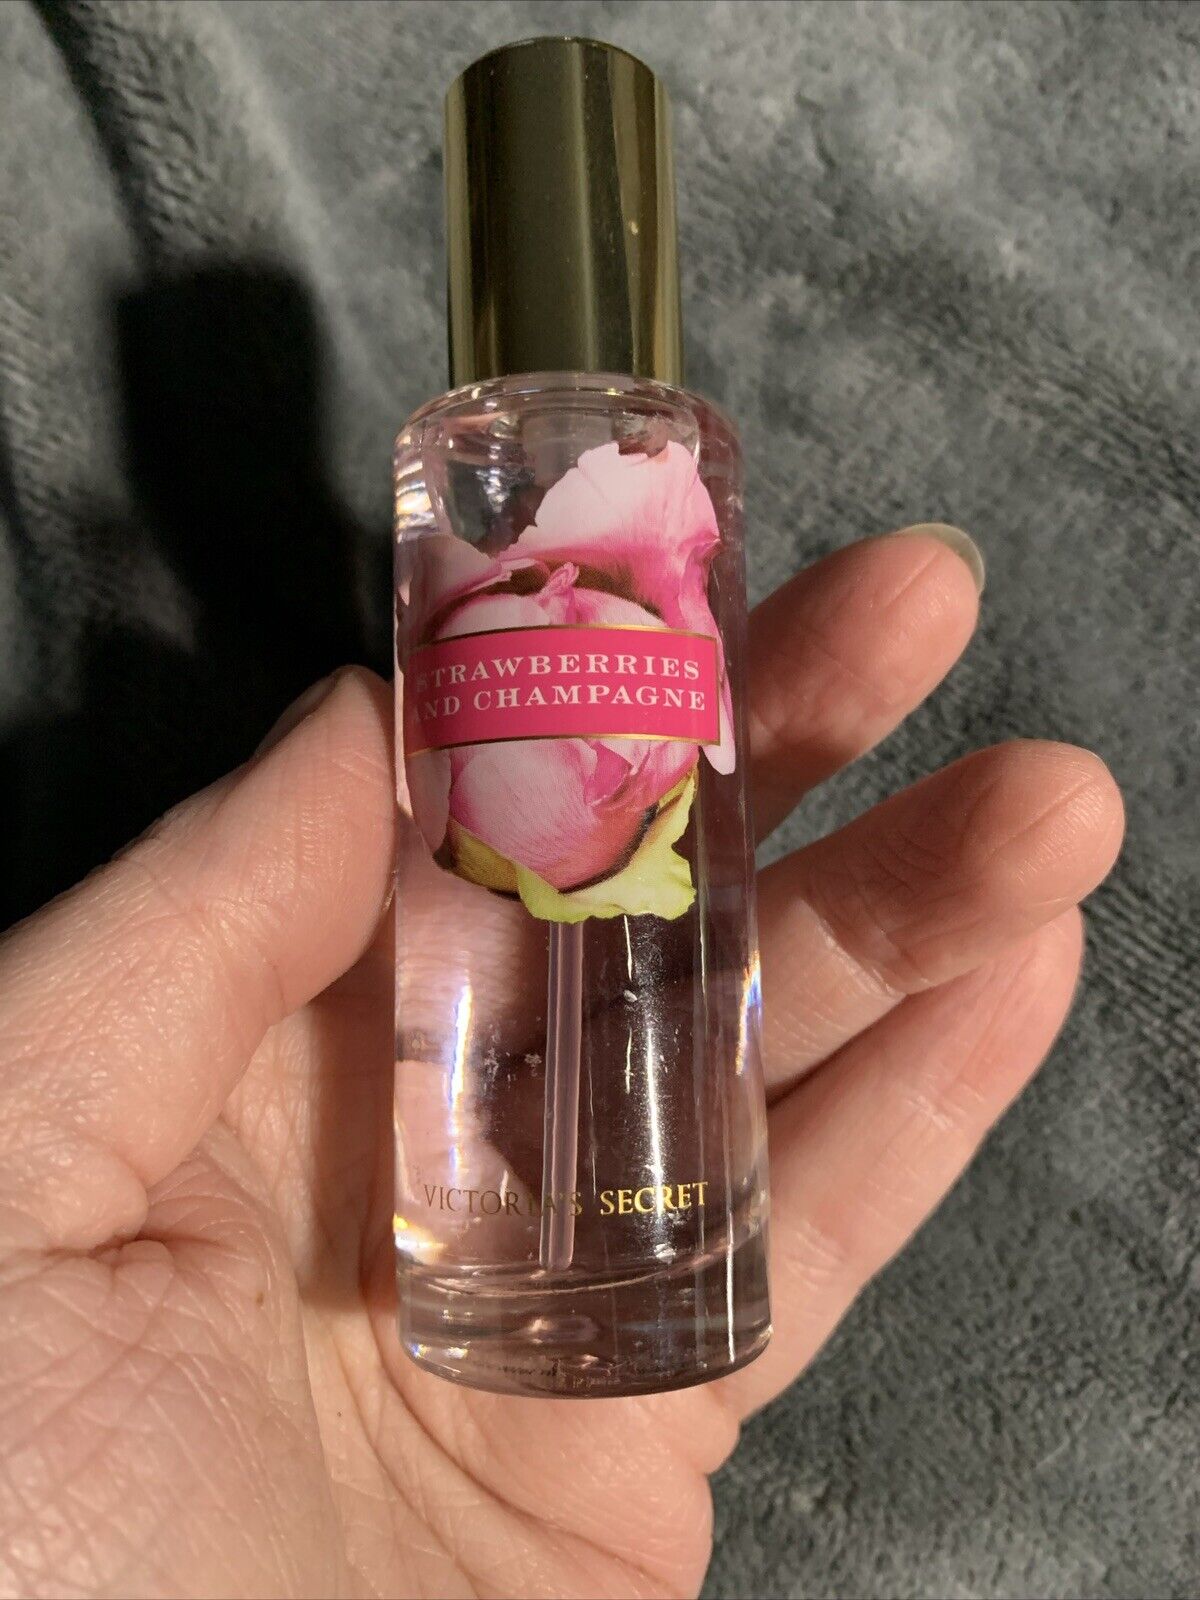 Vintage Victoria's Secret Strawberries & Champage 1oz eau de Toilette Perfume